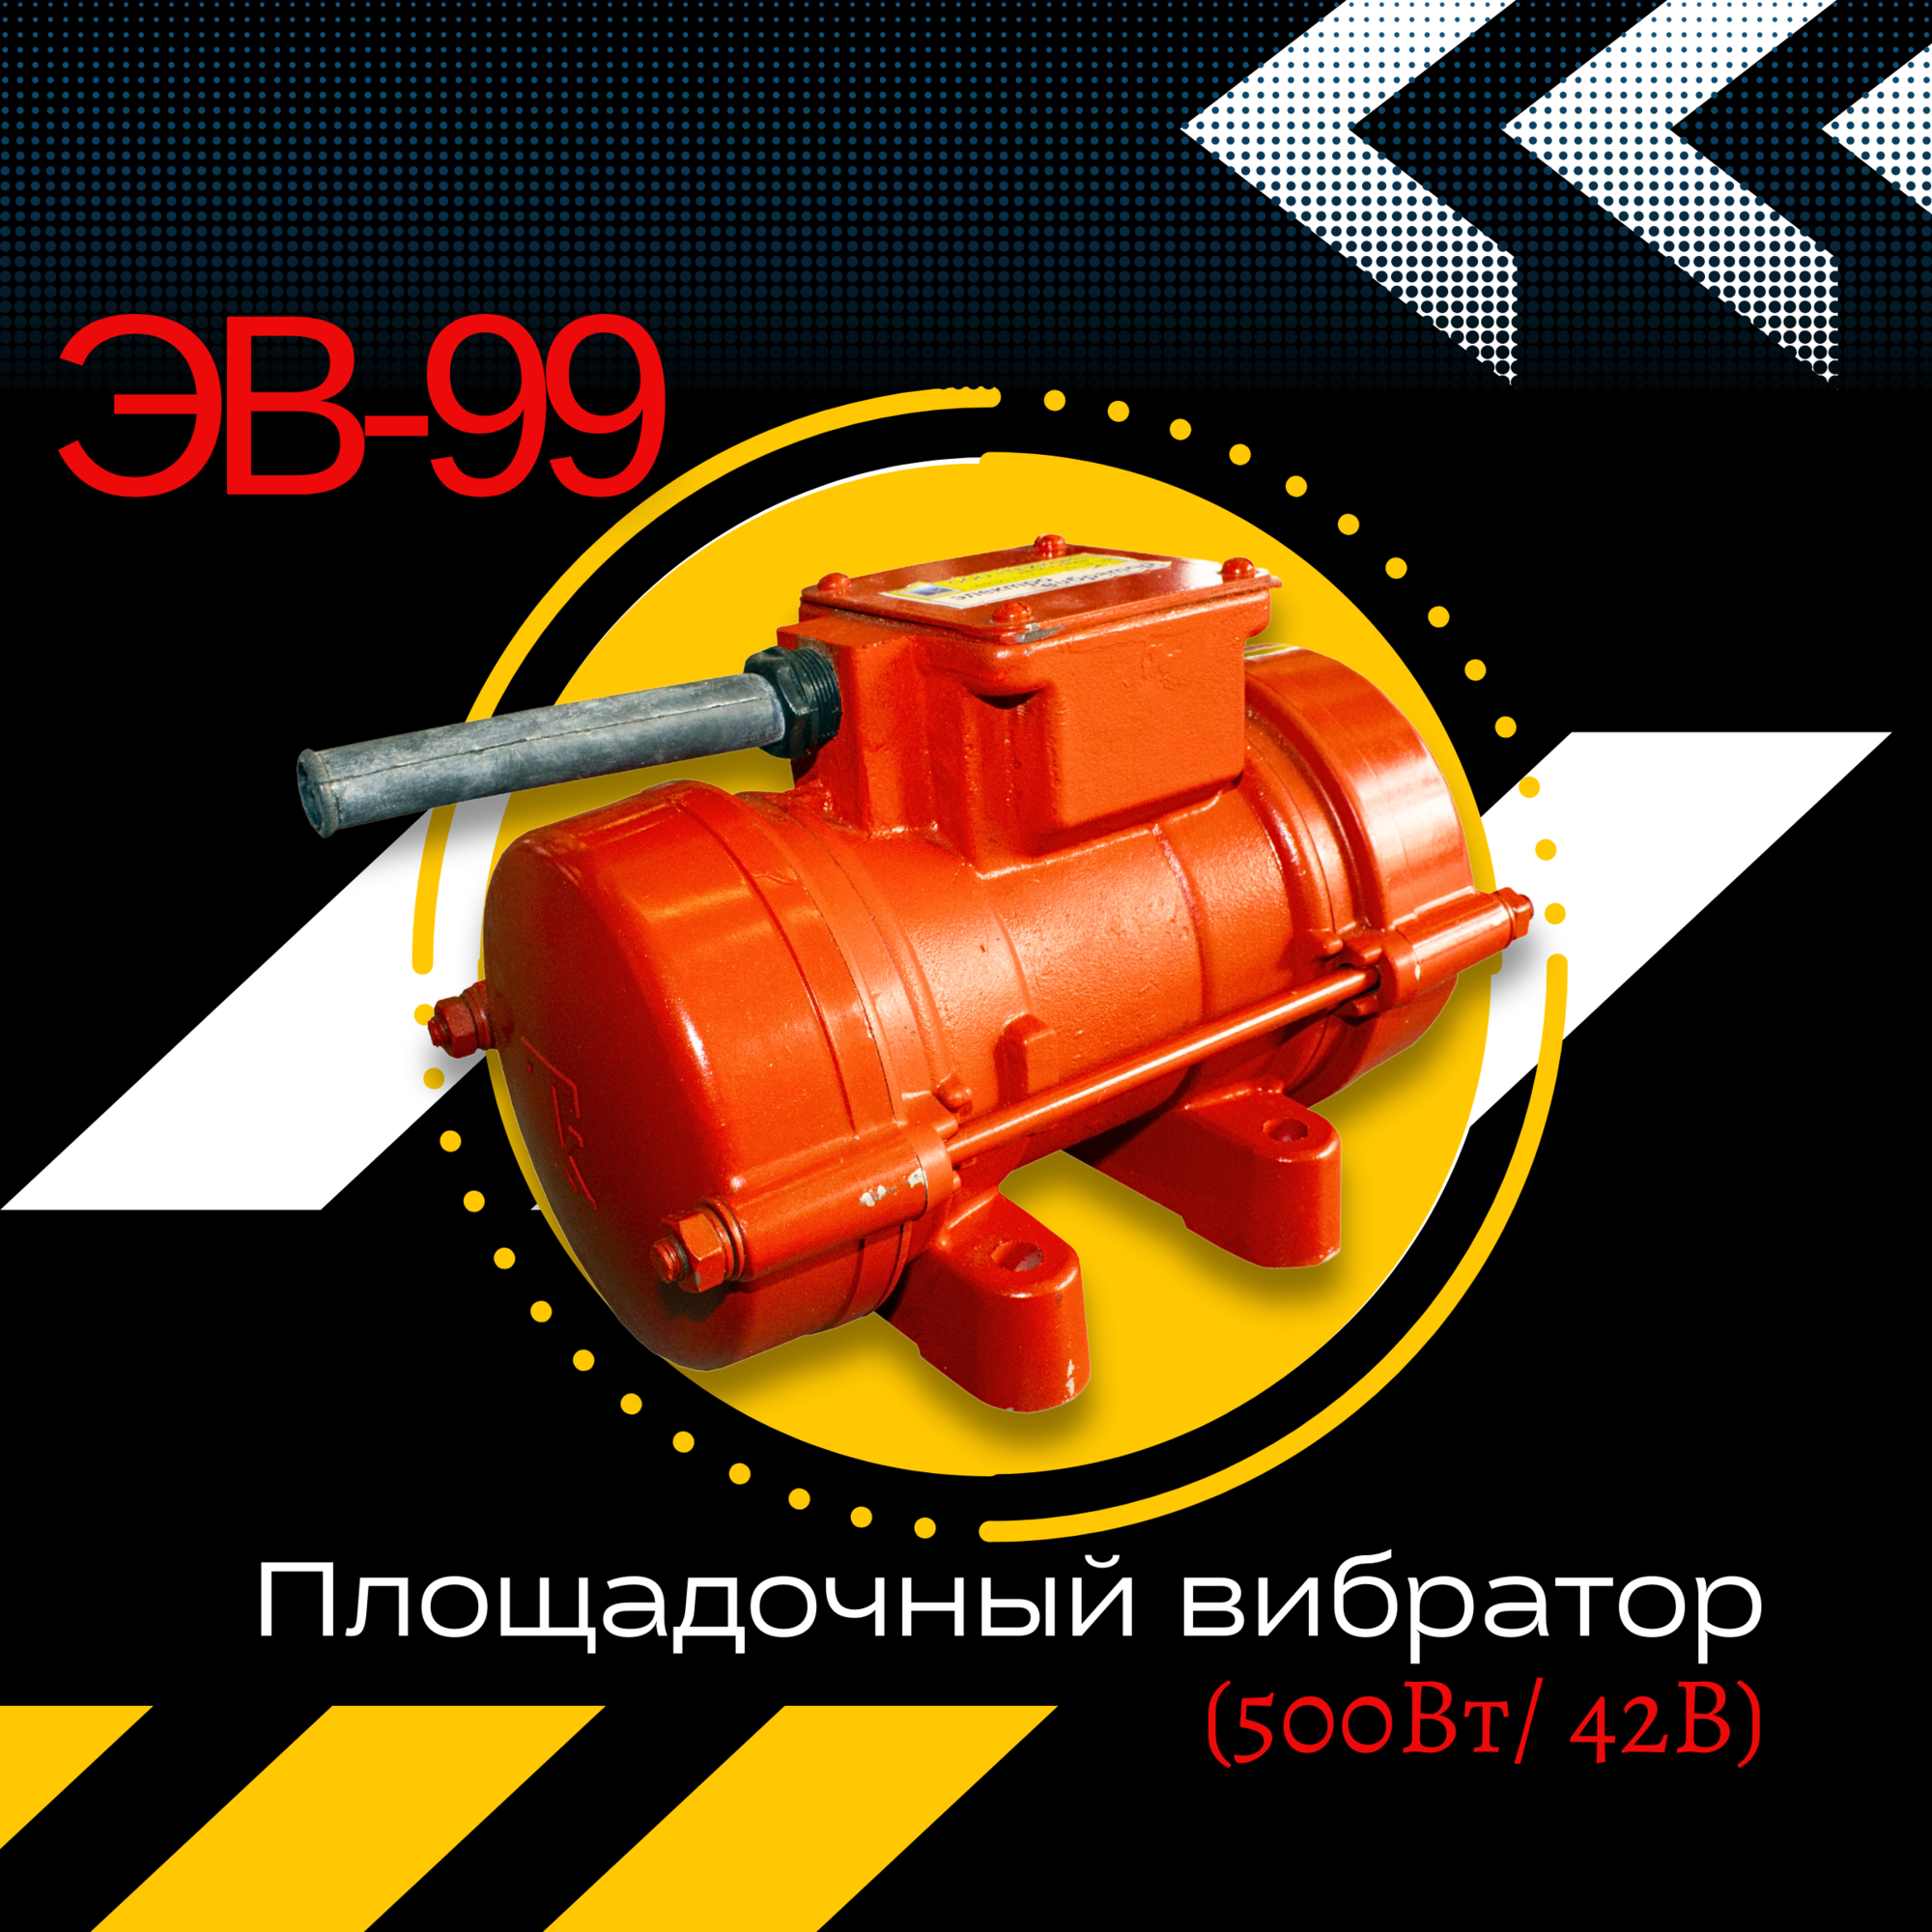 Площадочный вибратор TeaM ЭВ-99 (500Вт/ 42В)